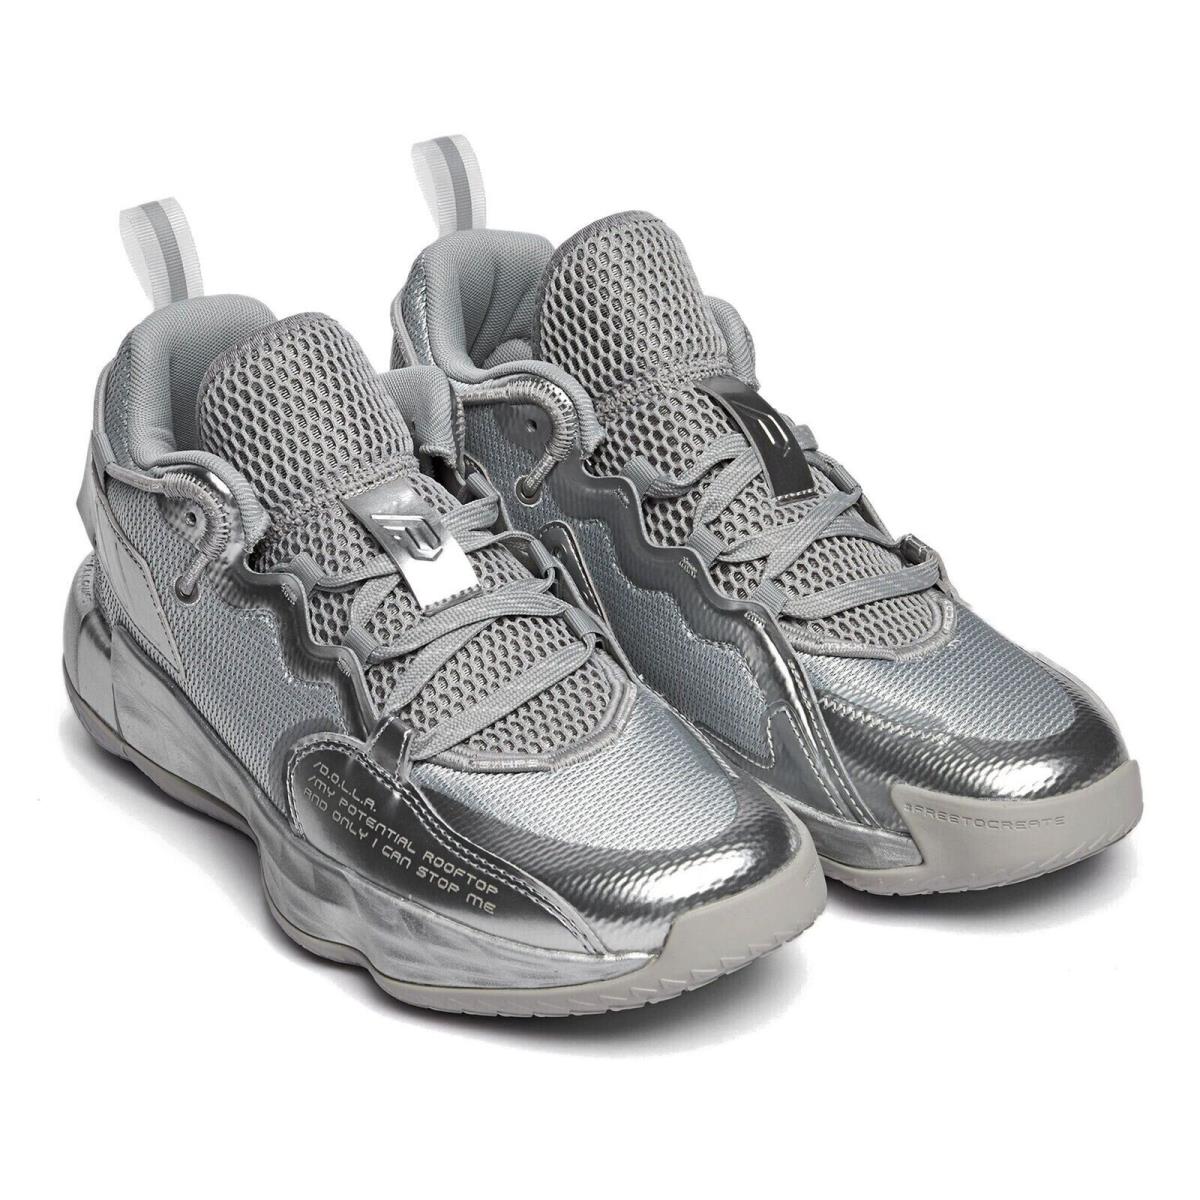 FZ0172 Men`s SZ 9 Adidas Dame 7 Extply Gray Silver Basketball Shoes